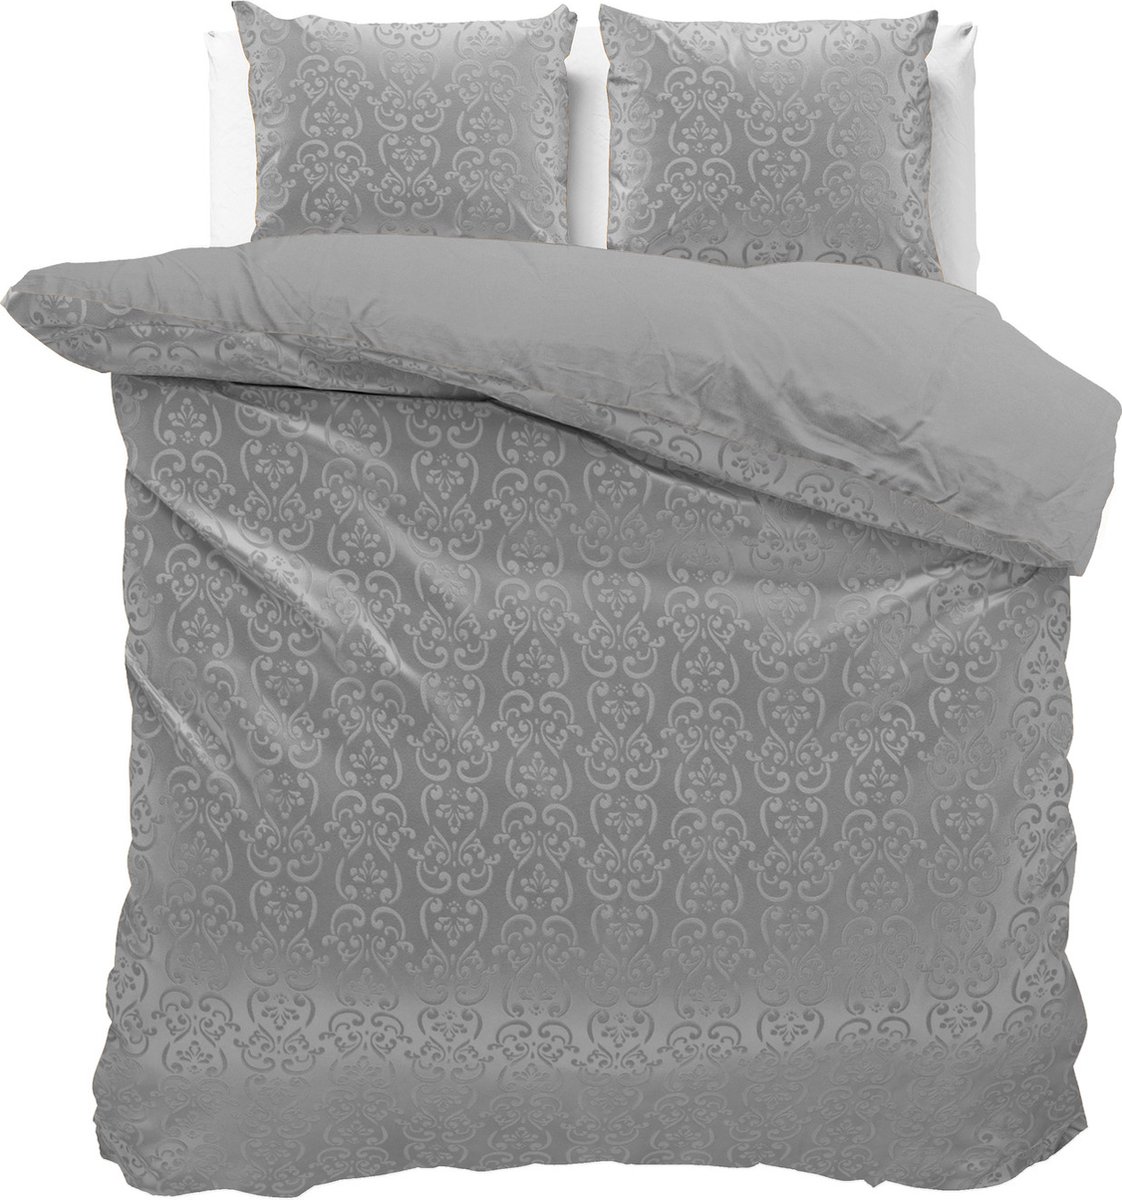 Fluweel zachte velvet dekbedovertrek embossed grijs - tweepersoons (200x200/220) - luxe uitstraling - handige drukknopsluiting